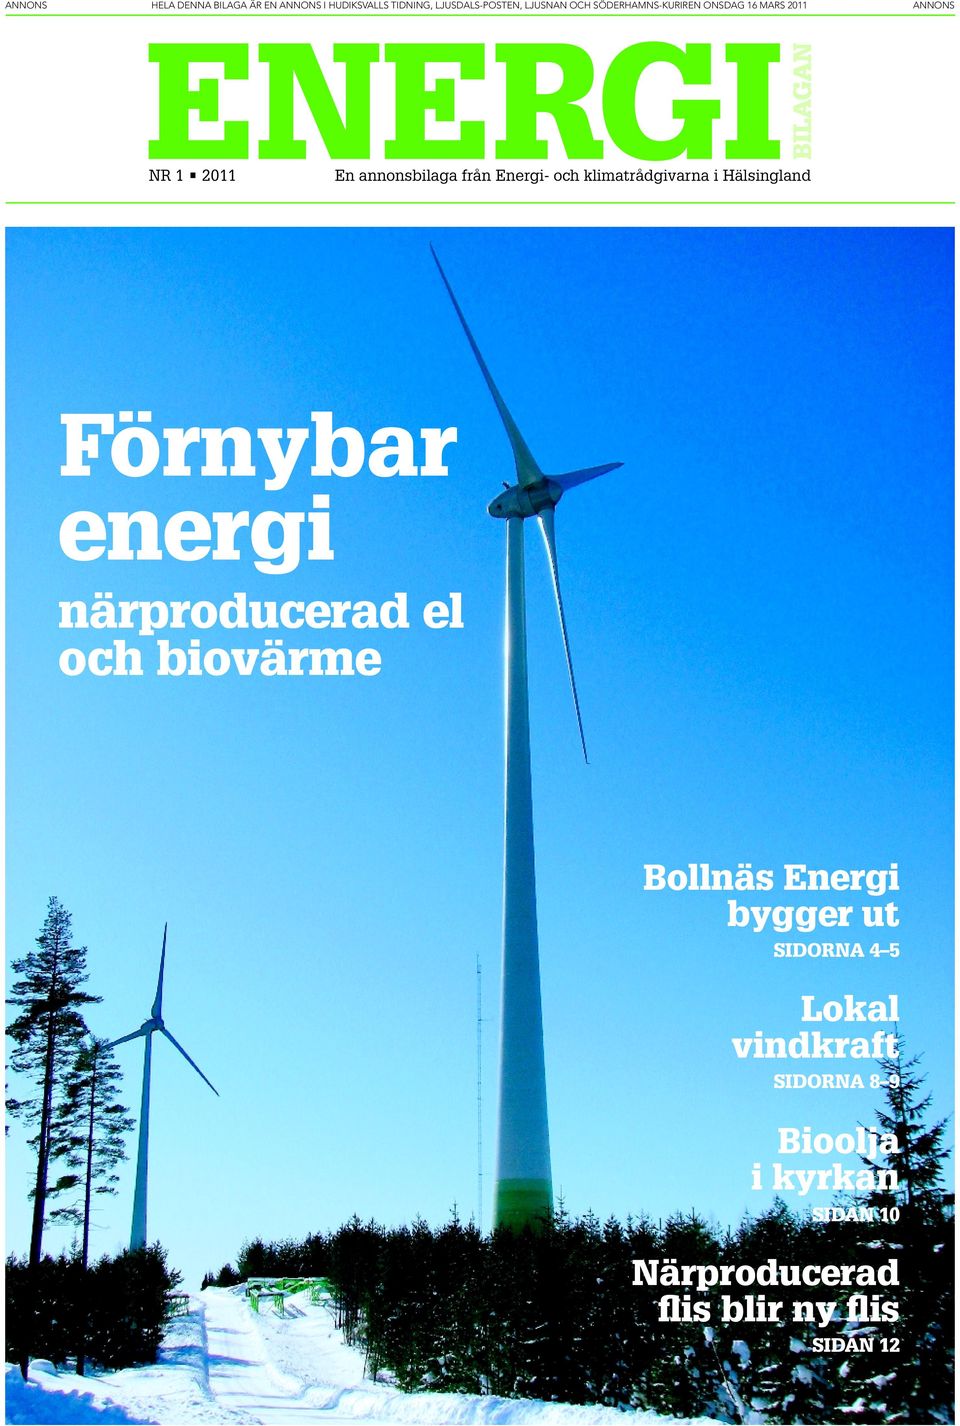 Bollnäs Energi bygger ut SIDORNA 4 5 Lokal vindkraft SIDORNA 8